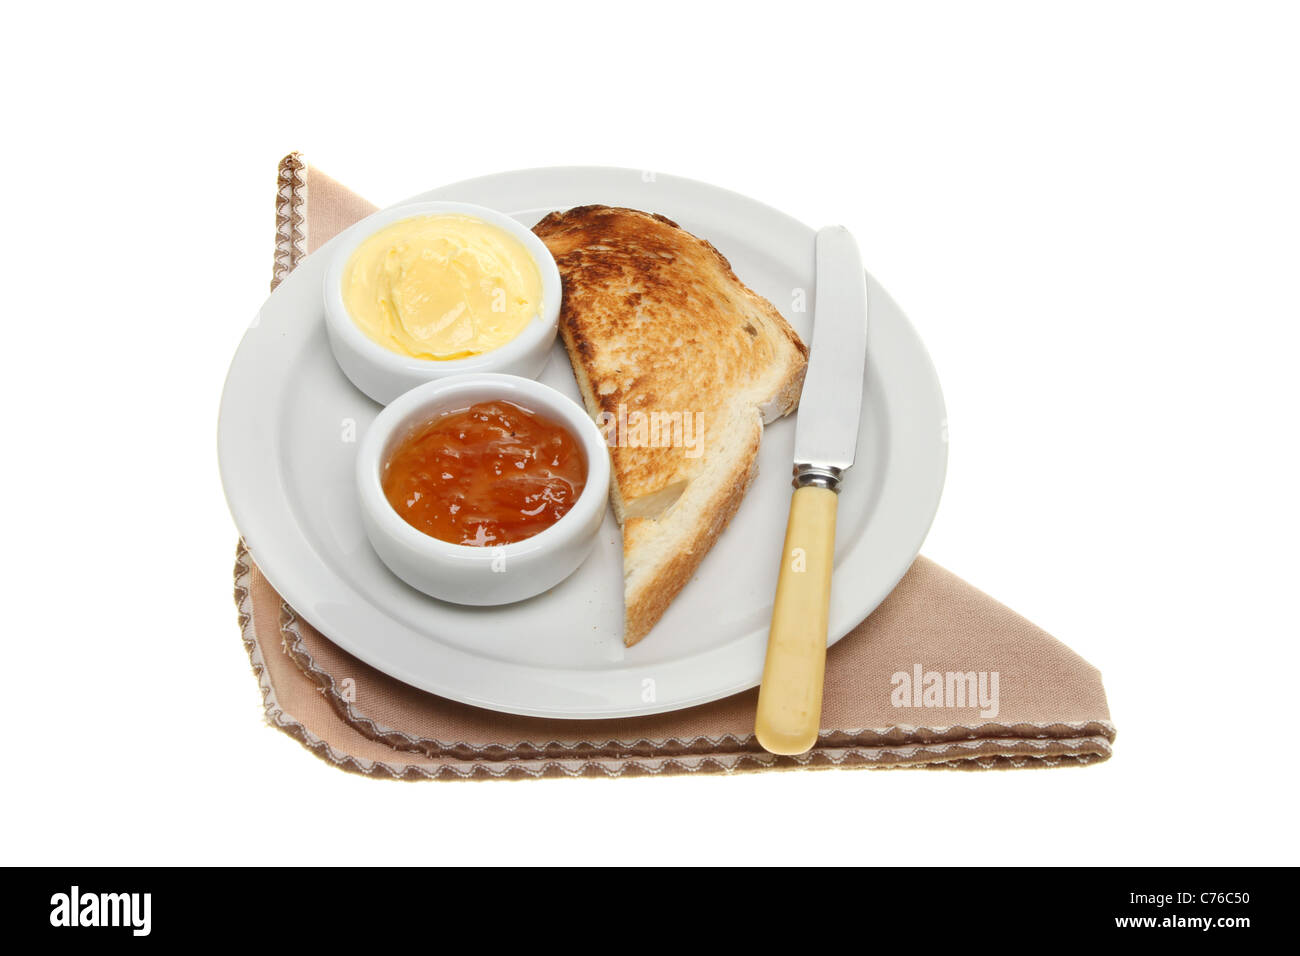 Pain grillé, beurre et confiture sur une assiette avec un couteau et une serviette blanche contre isolés Banque D'Images